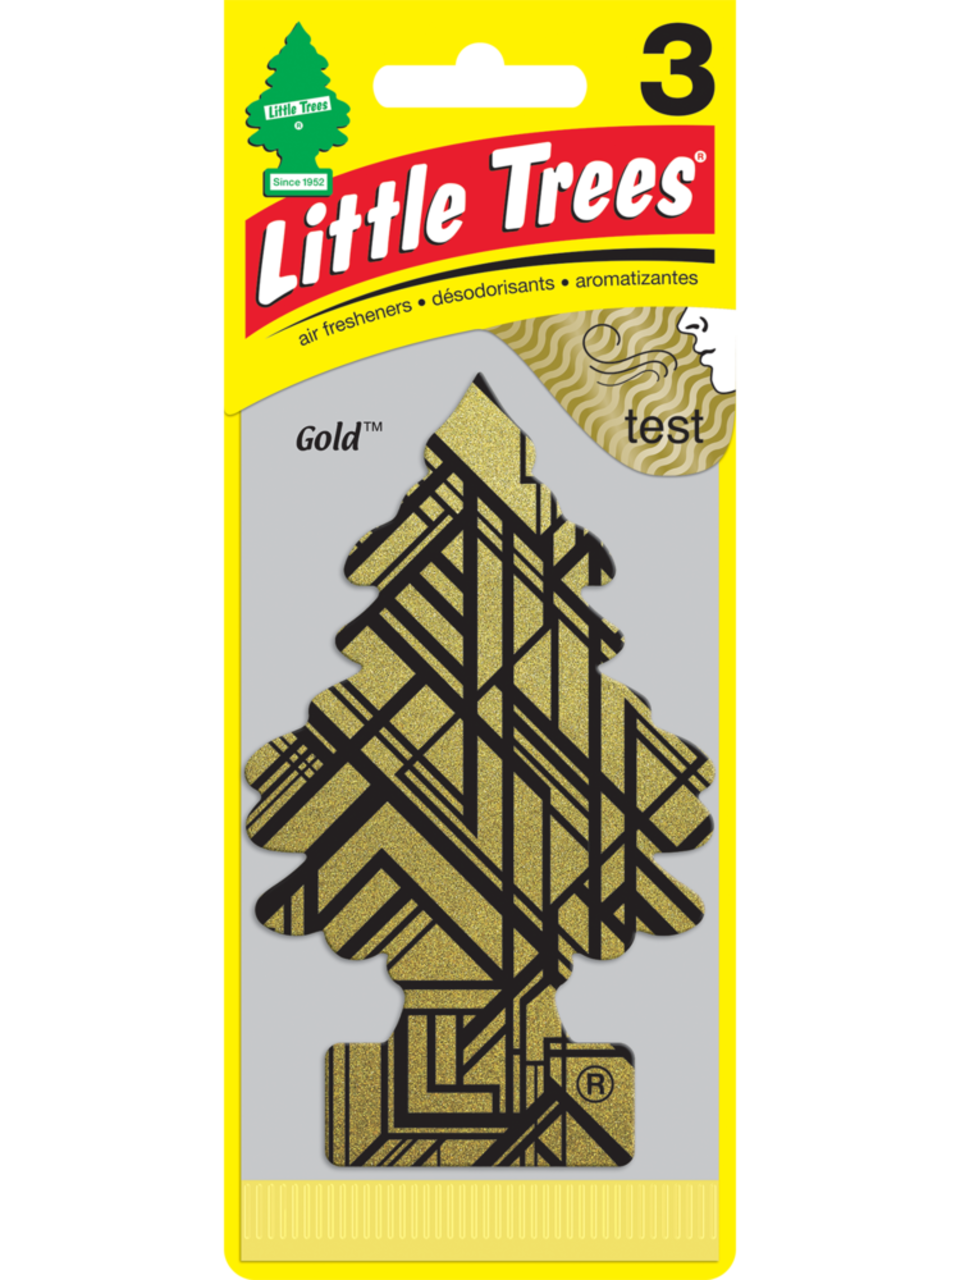 Little Trees Hanging Air Freshener, Gold, 3-pk